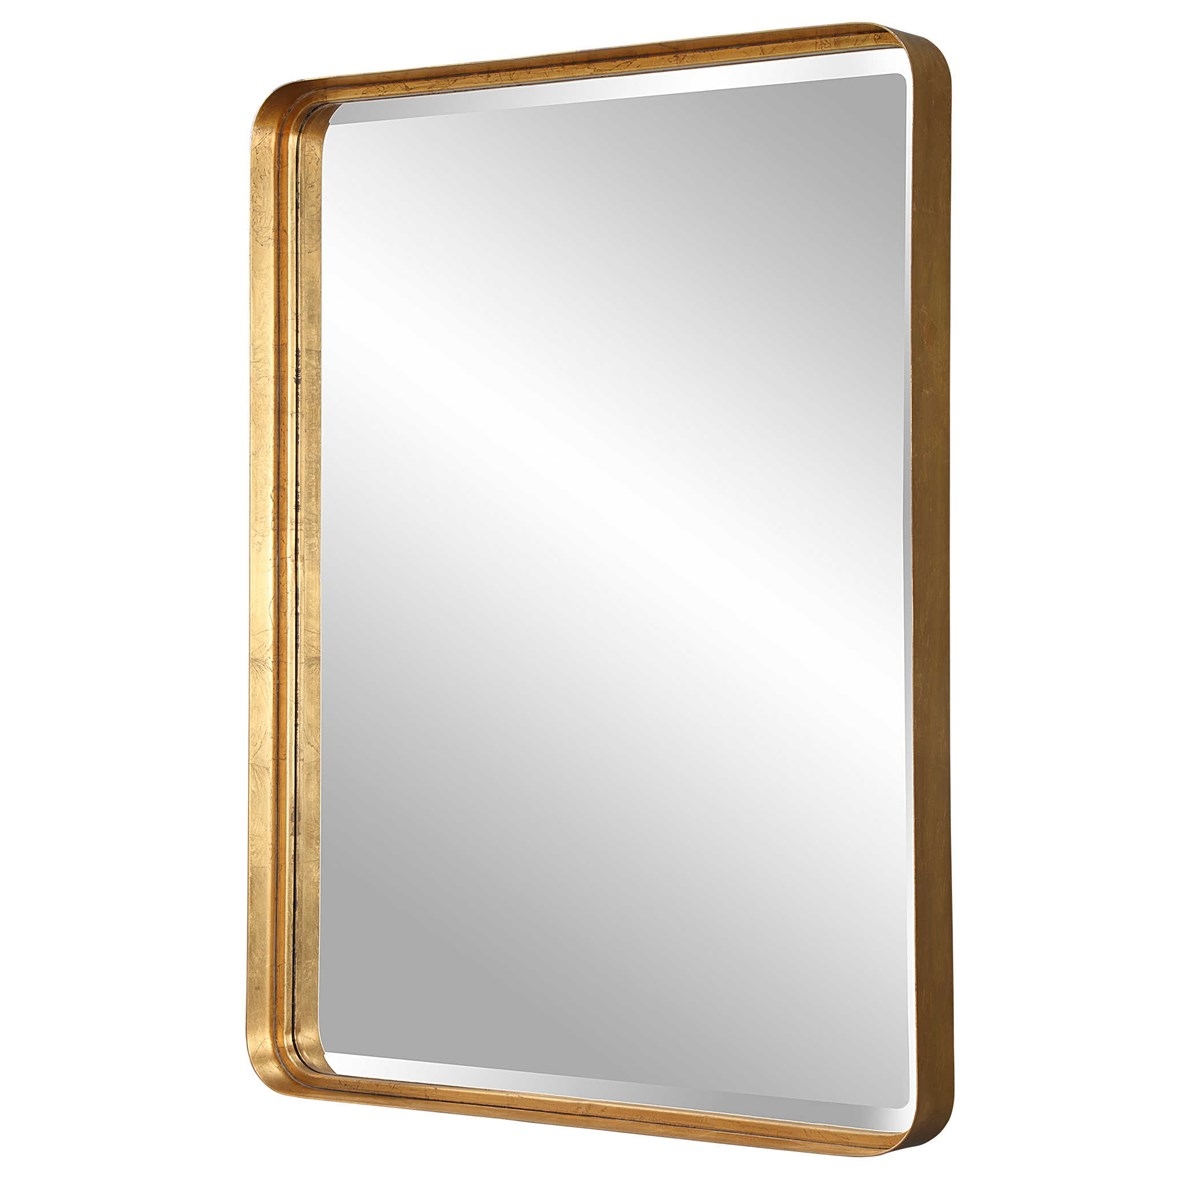 Crofton Mirror, Gold, Large - Image 3